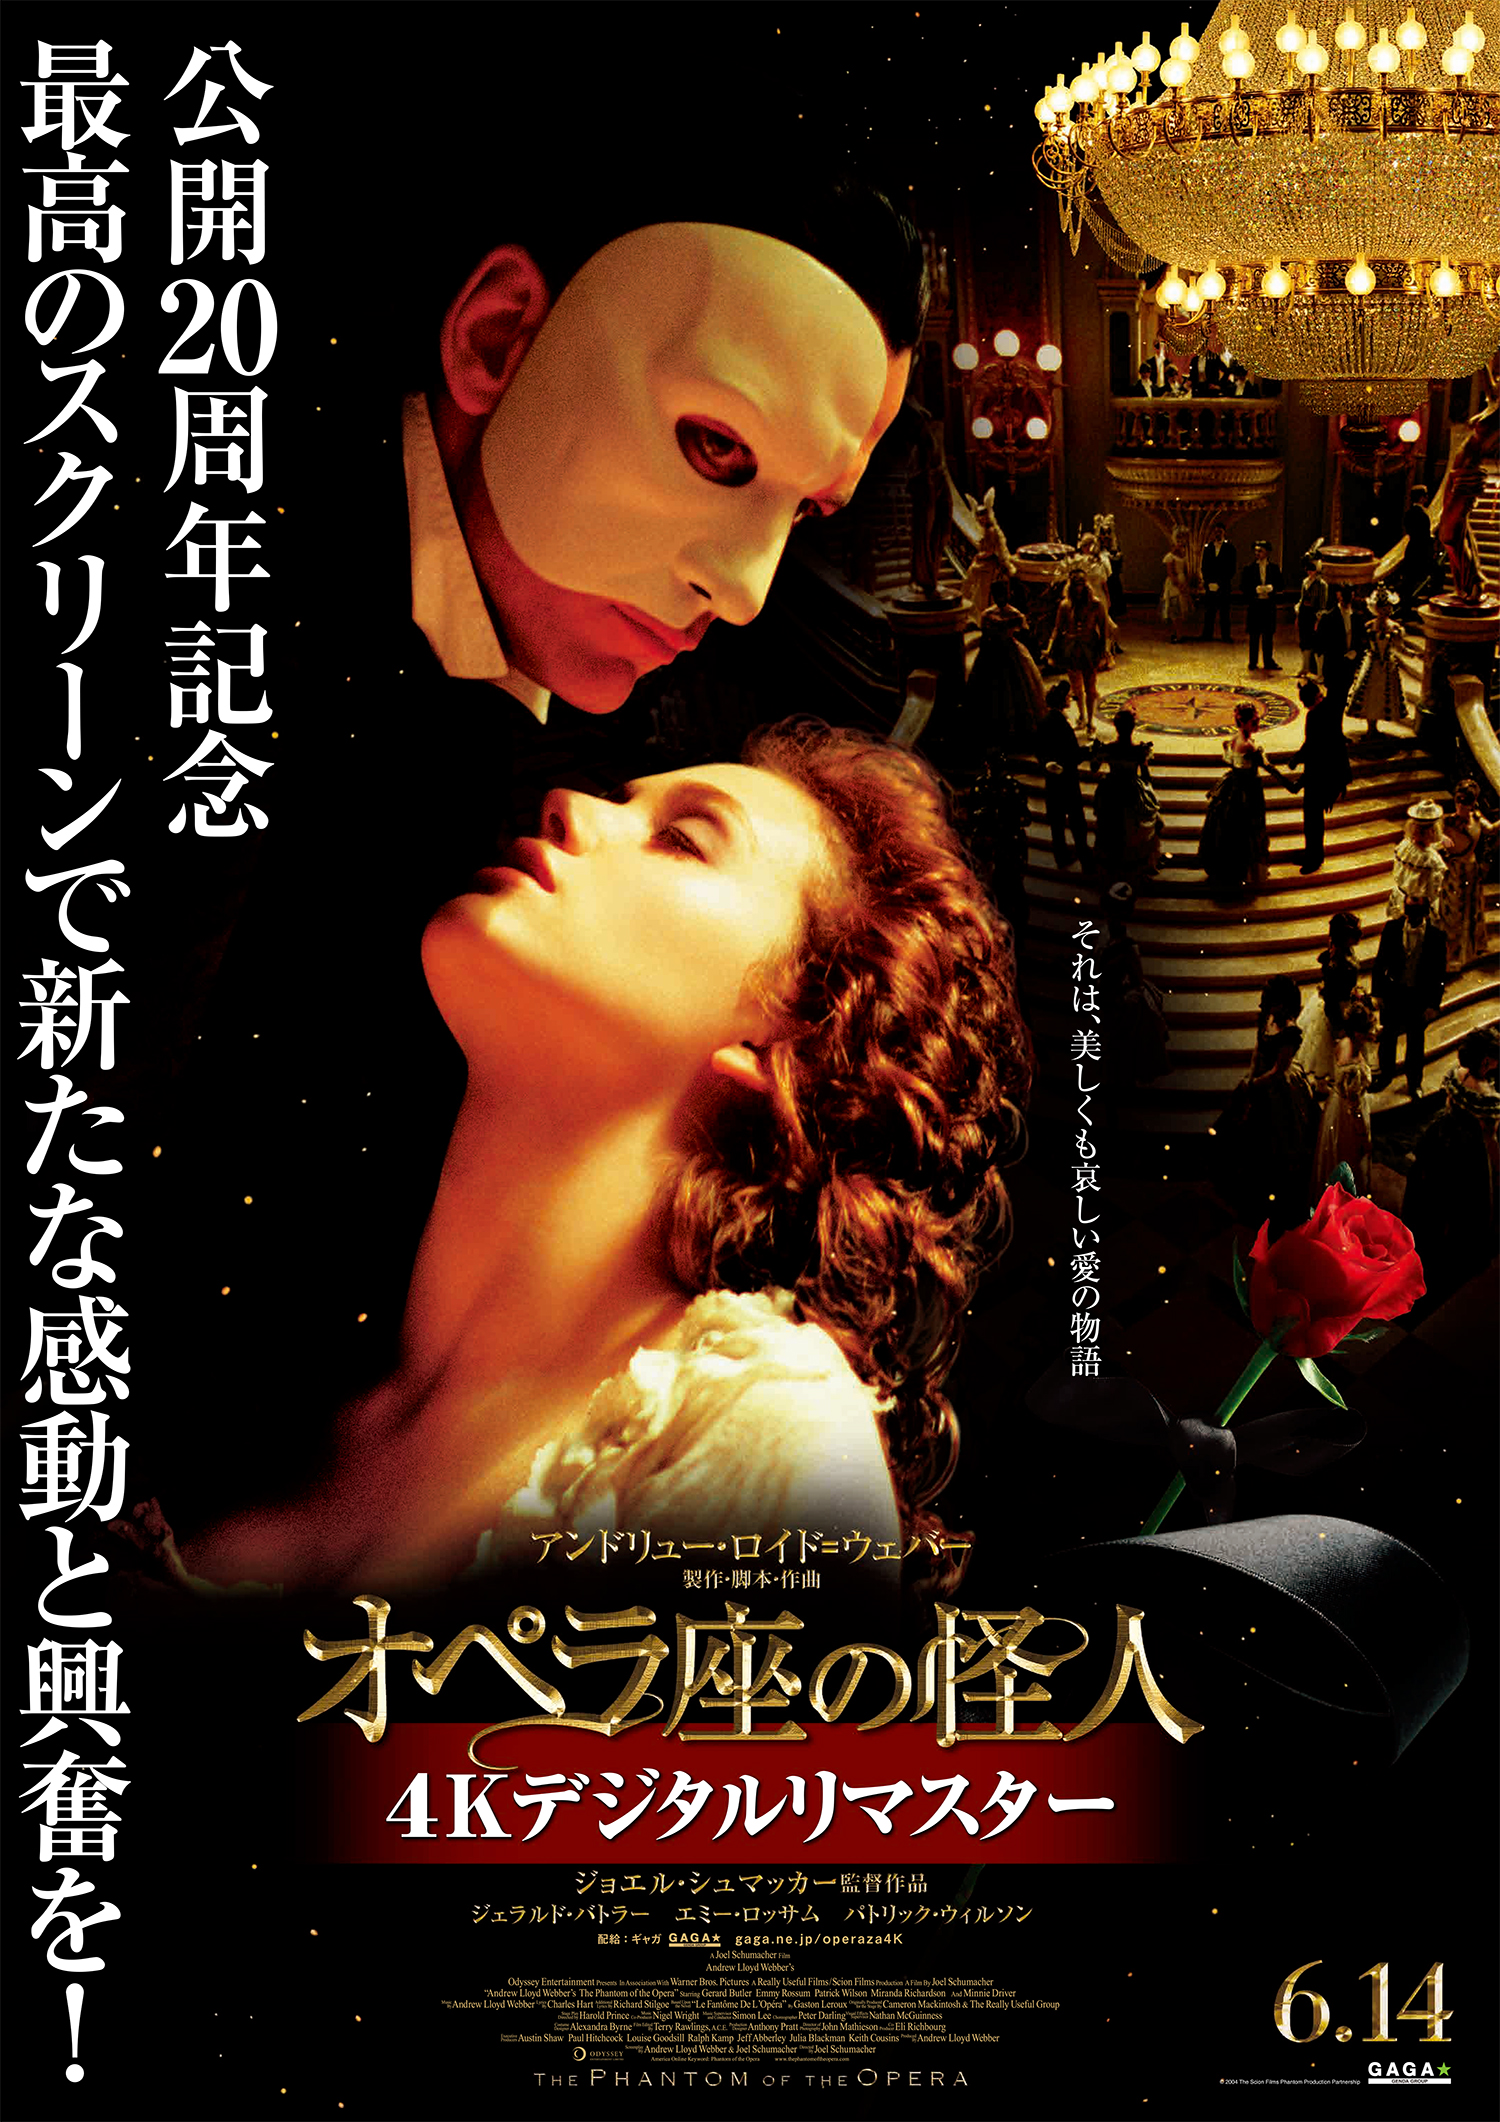 「オペラ座の怪人」 4K デジタルリマスター